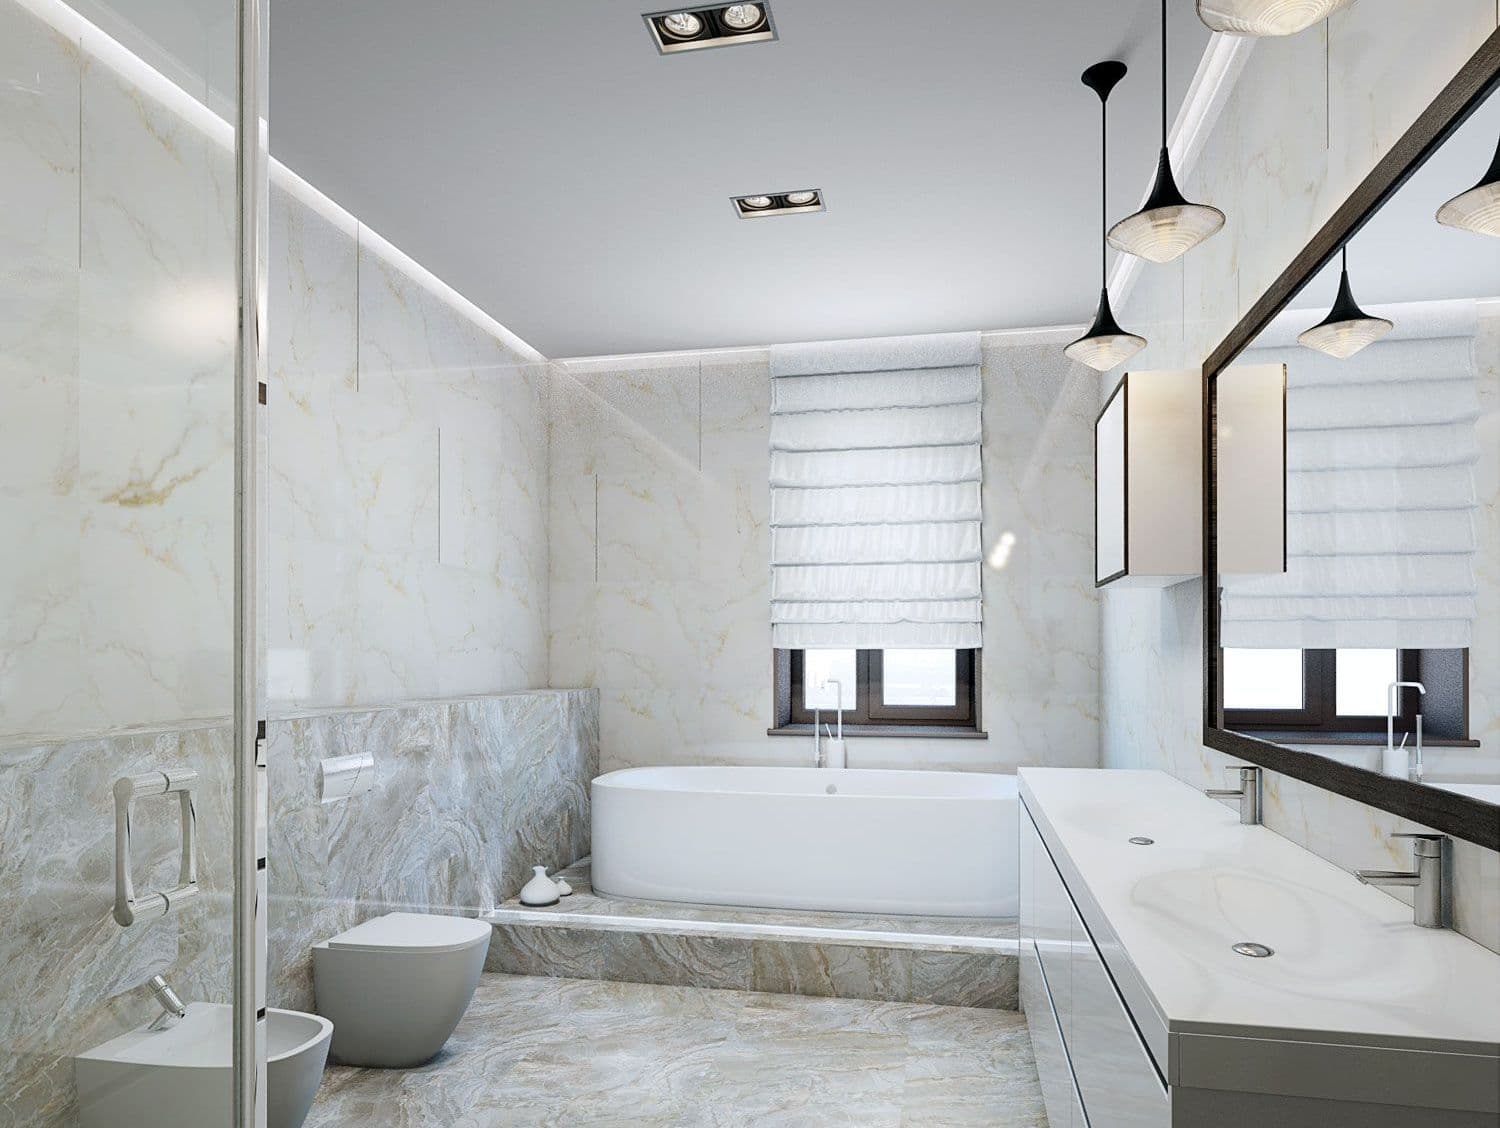 Дизайн ванной комнаты с унитазом, биде, двойной раковиной, белой мебелью, ванной на подиуме, душем со стеклянной перегородкой, плиткой под мрамор, декоративной подсветкой, вид 1